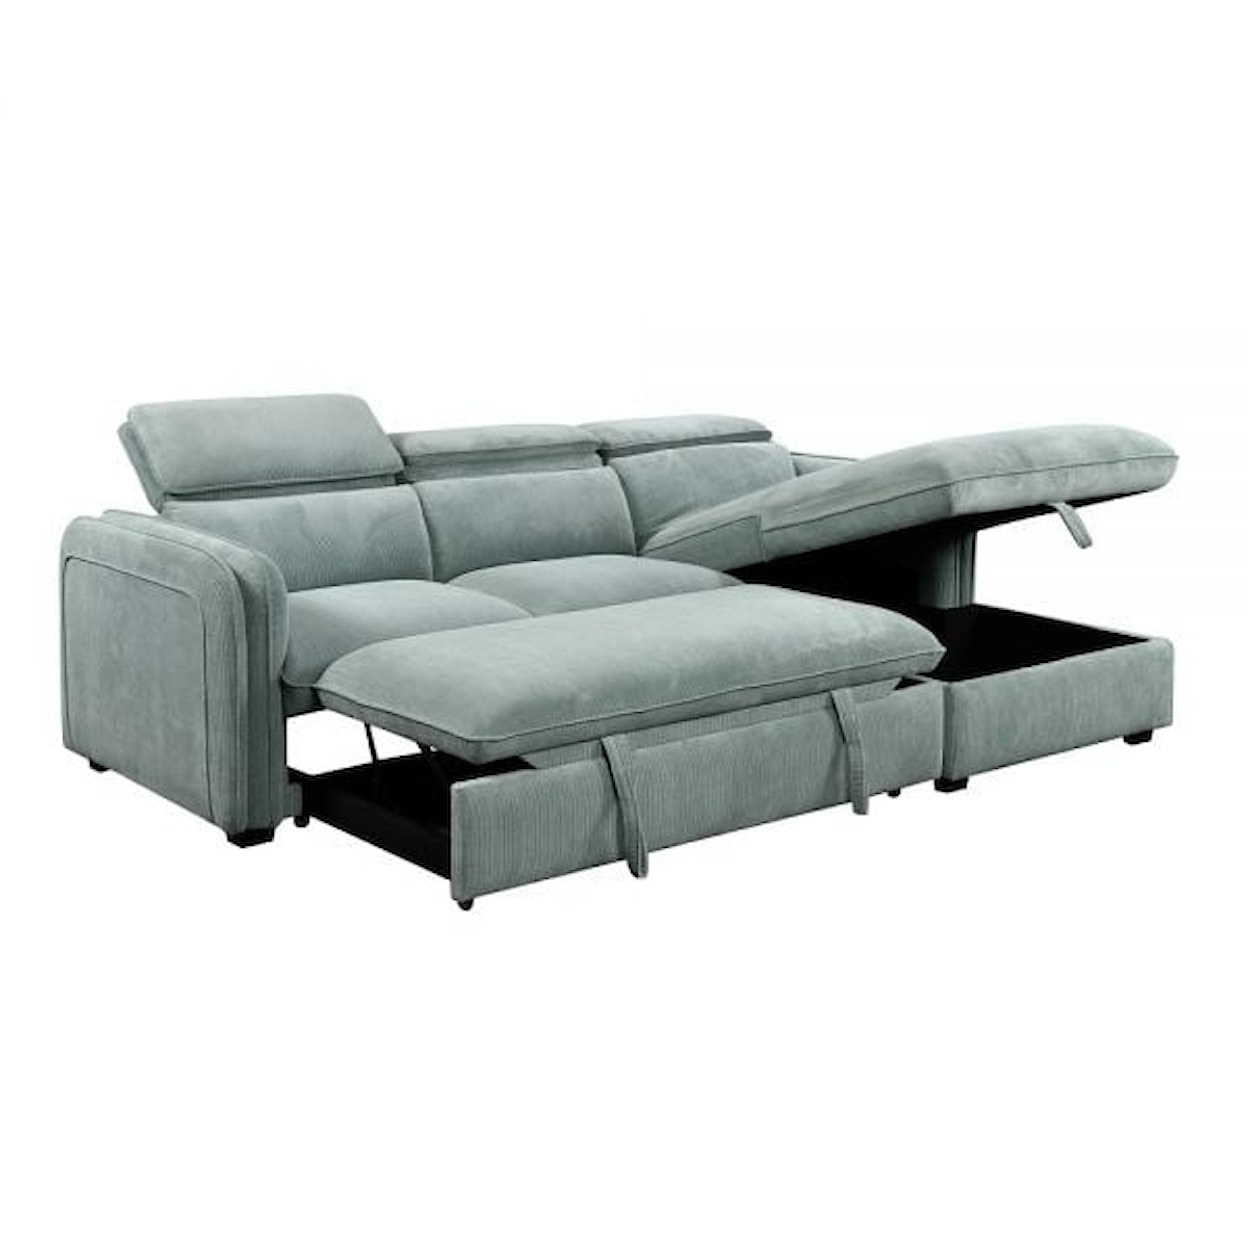 Acme Furniture Zavala Sectional Sleeper Sofa